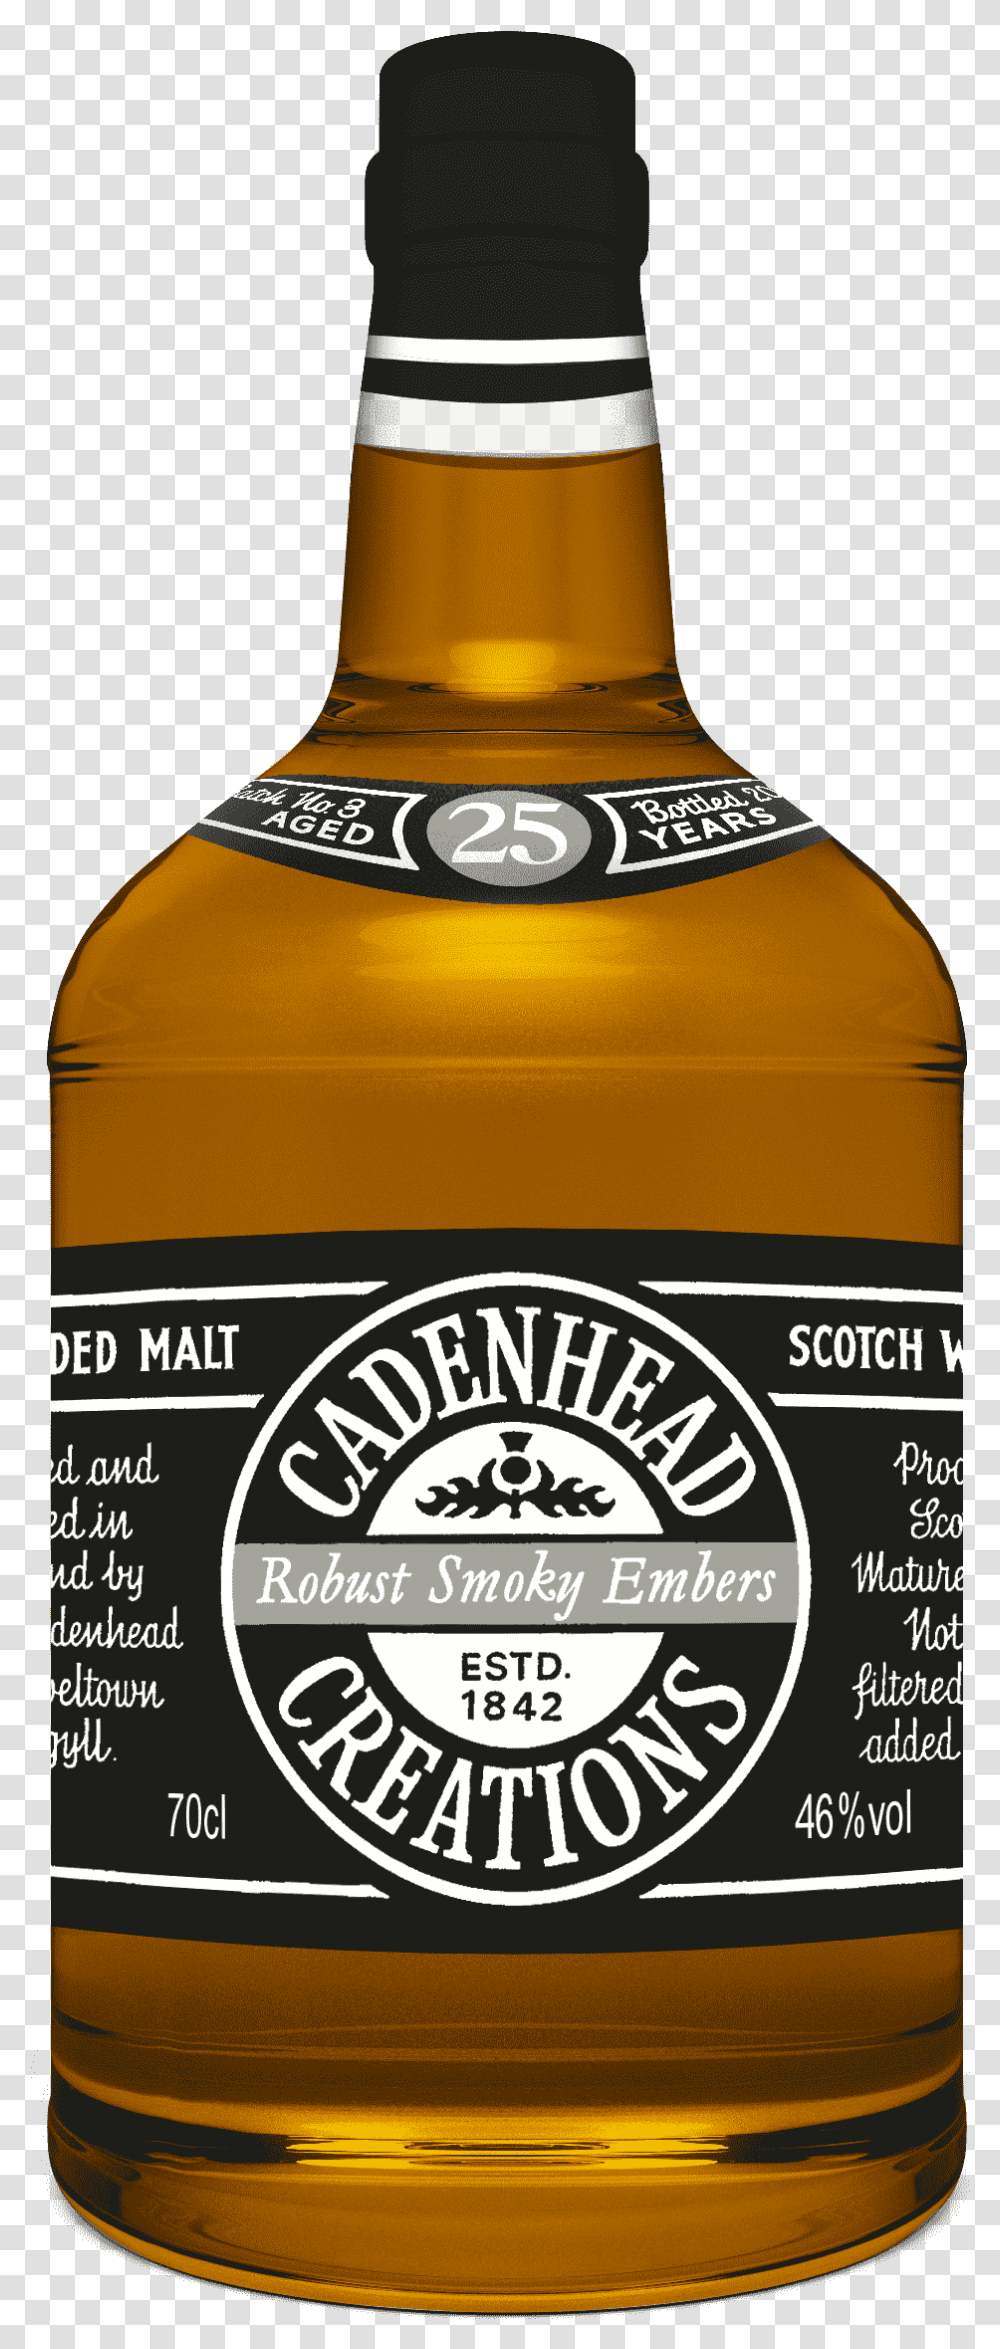 A Bottle Of Cadenhead Creations Smoky Beer Bottle, Liquor, Alcohol, Beverage, Drink Transparent Png